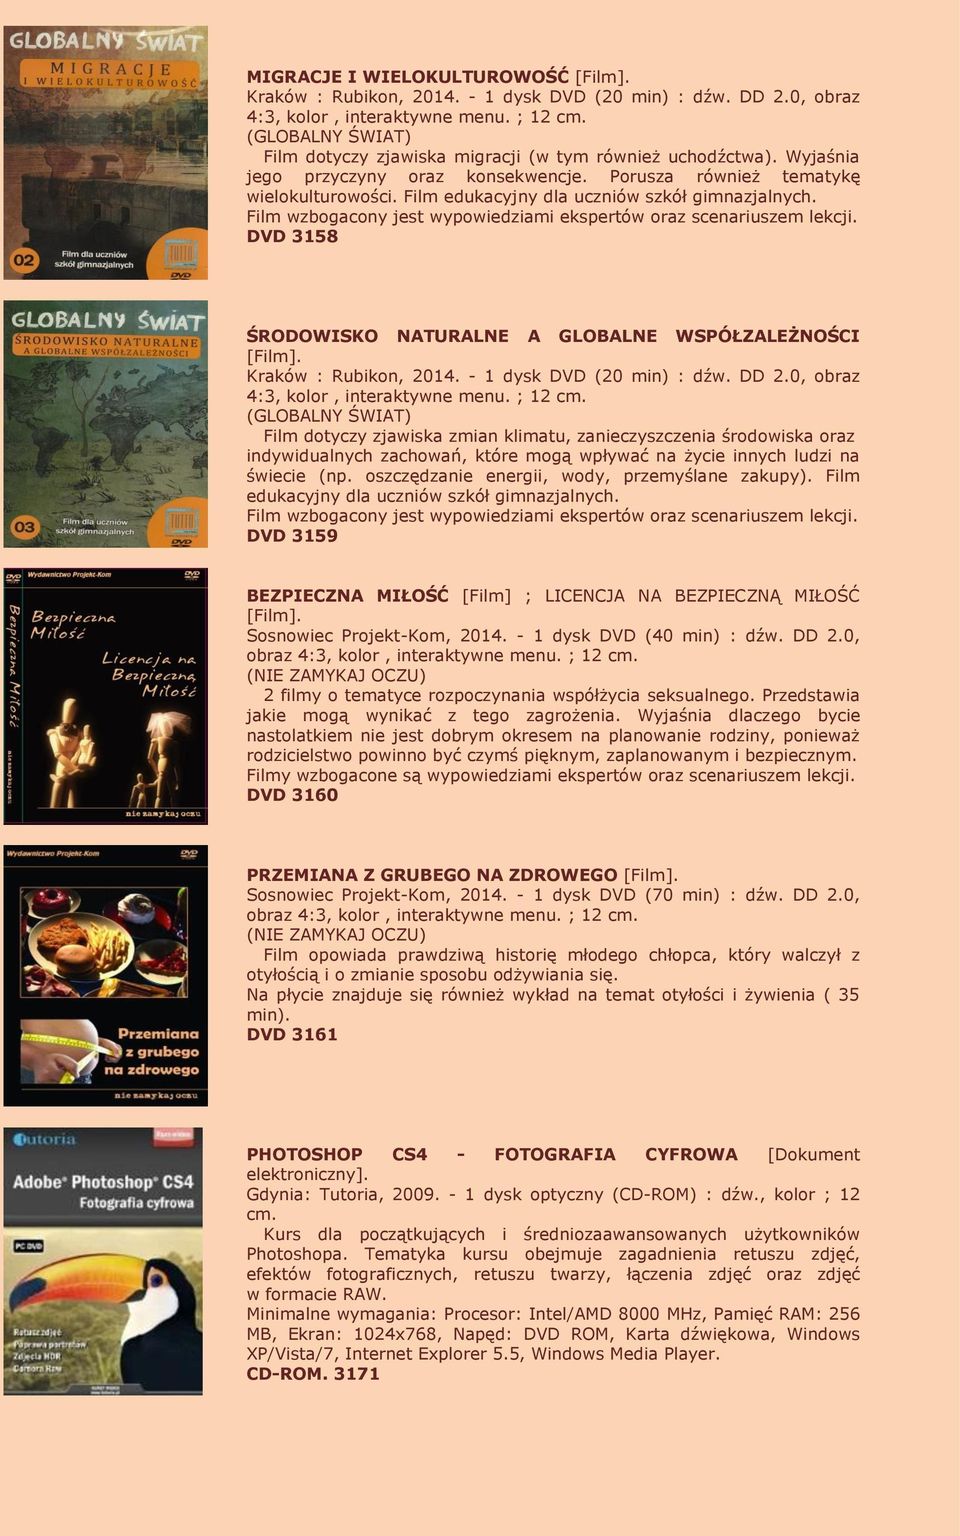 DVD 3158 ŚRODOWISKO NATURALNE A GLOBALNE WSPÓŁZALEŻNOŚCI [Film]. 4:3, kolor, interaktywne menu. ; 12 cm.